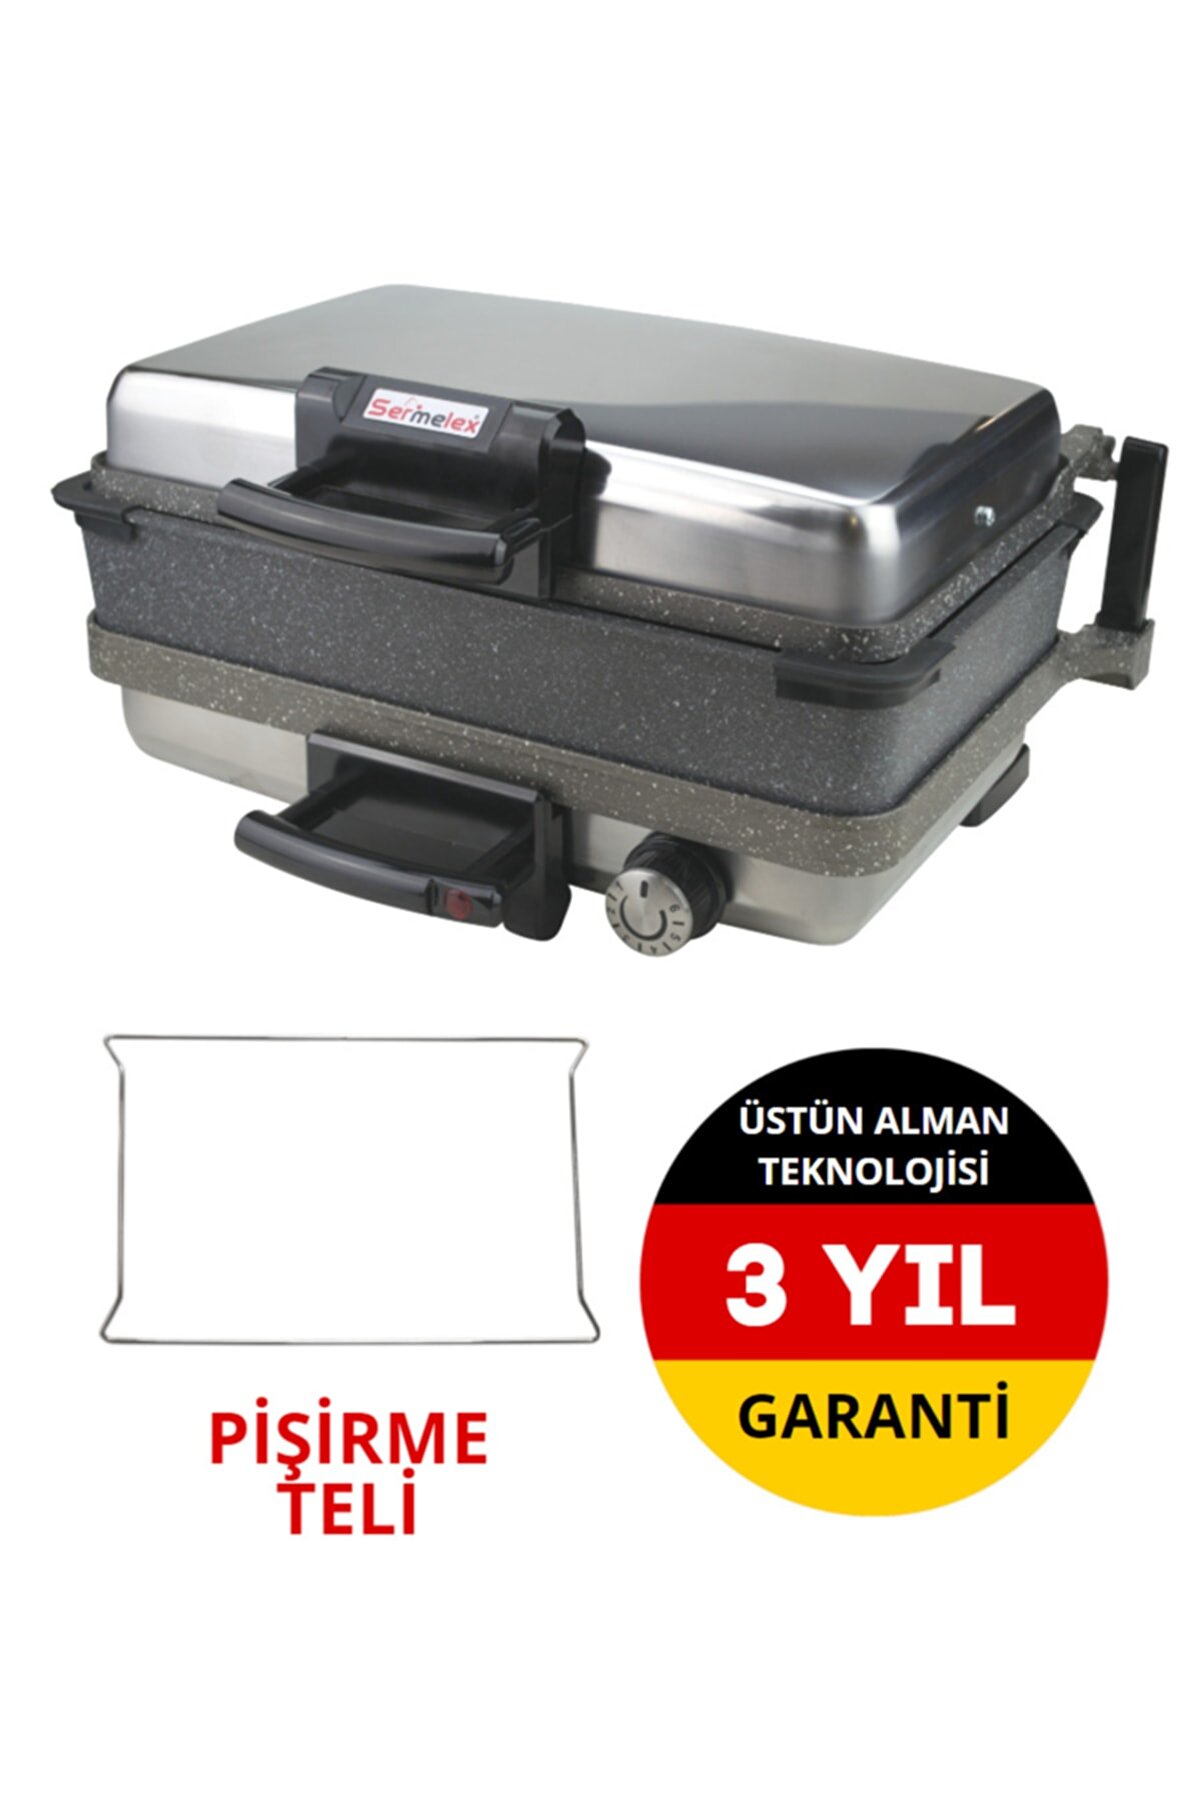 Sermelex Jumbo Granit Grill (INOX) Pan Dahil - Silex Bazlama Lahmacun Pizza Izgara Tost Makinesi